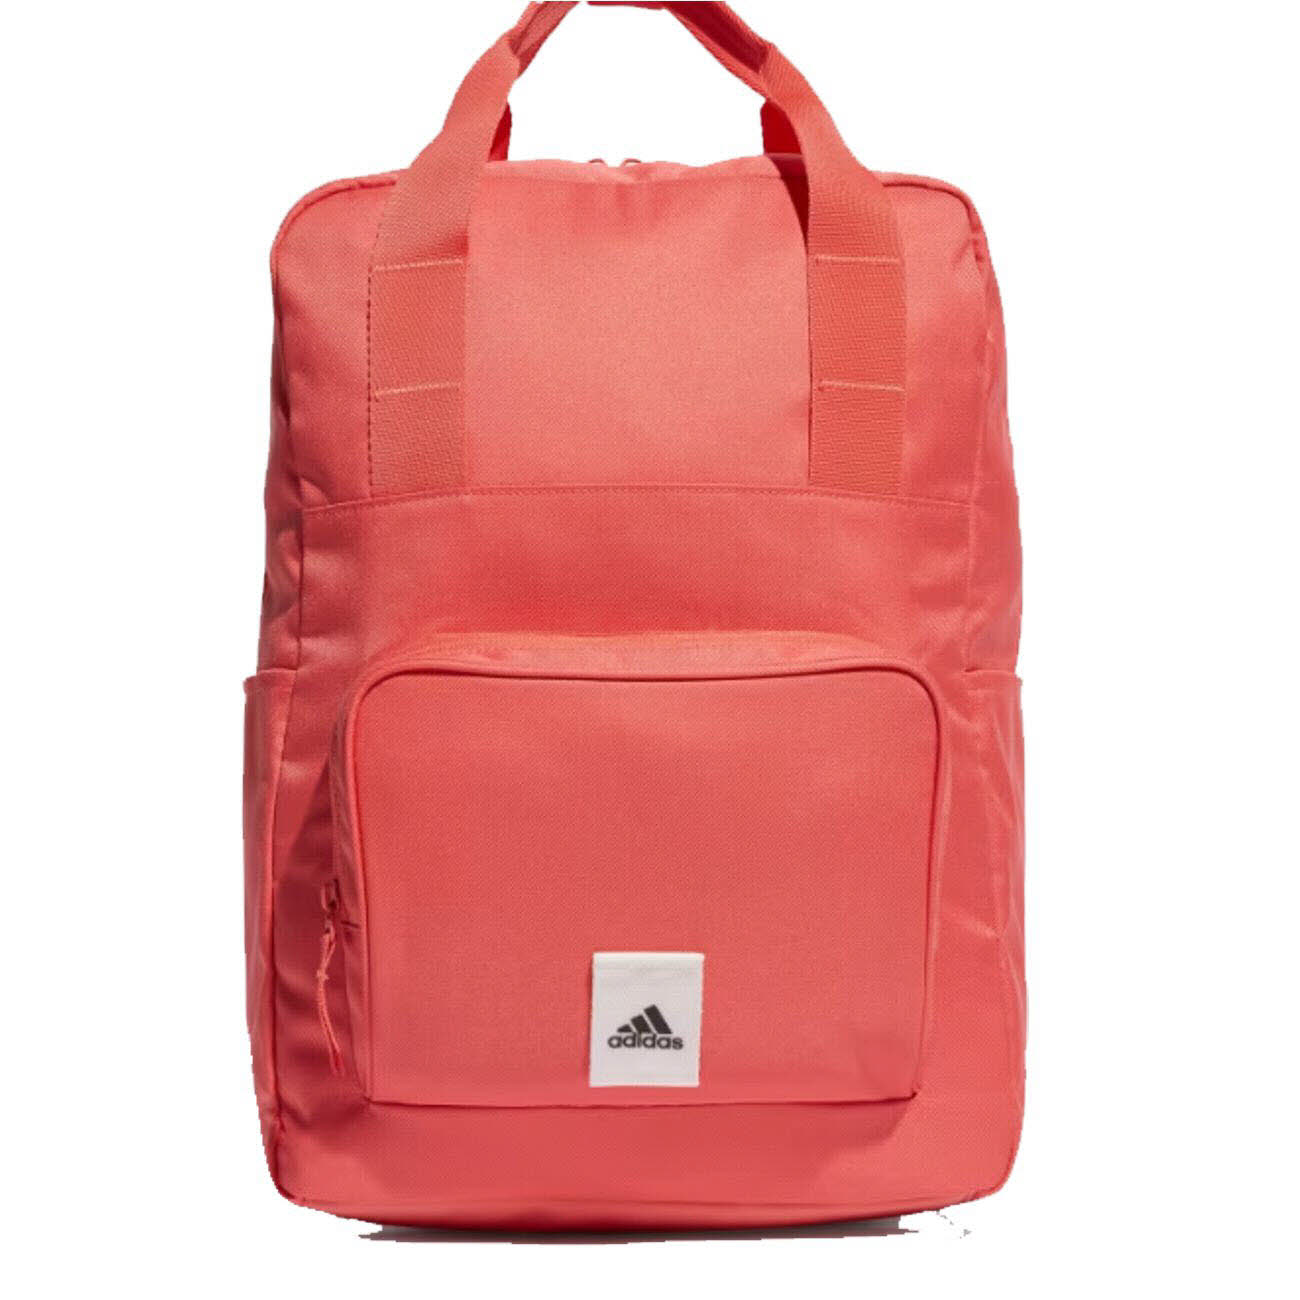 Damen Rucksack von Adidas auch in Rot erhältlich